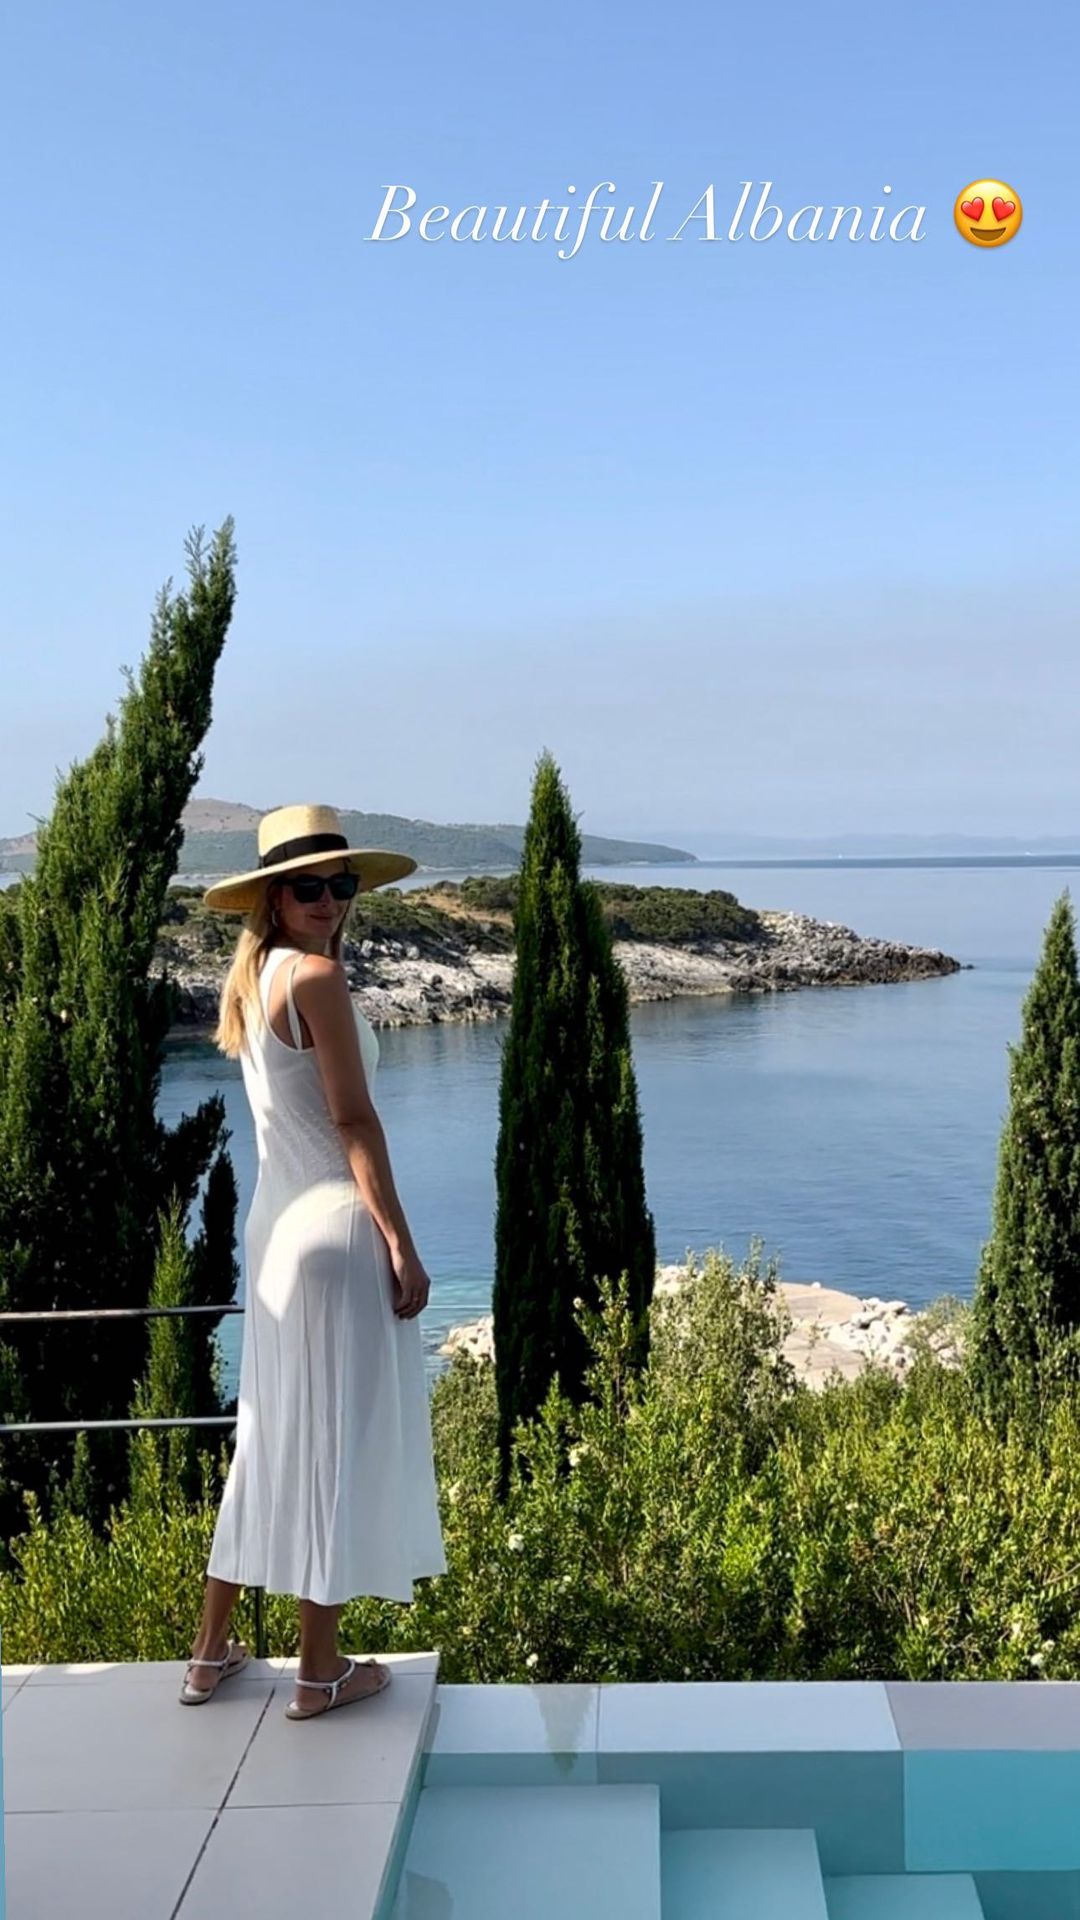 FOTO/ Ivanka Trump promovon bukurinë e Shqipërisë për 7.5 milionë ndjekësit e saj